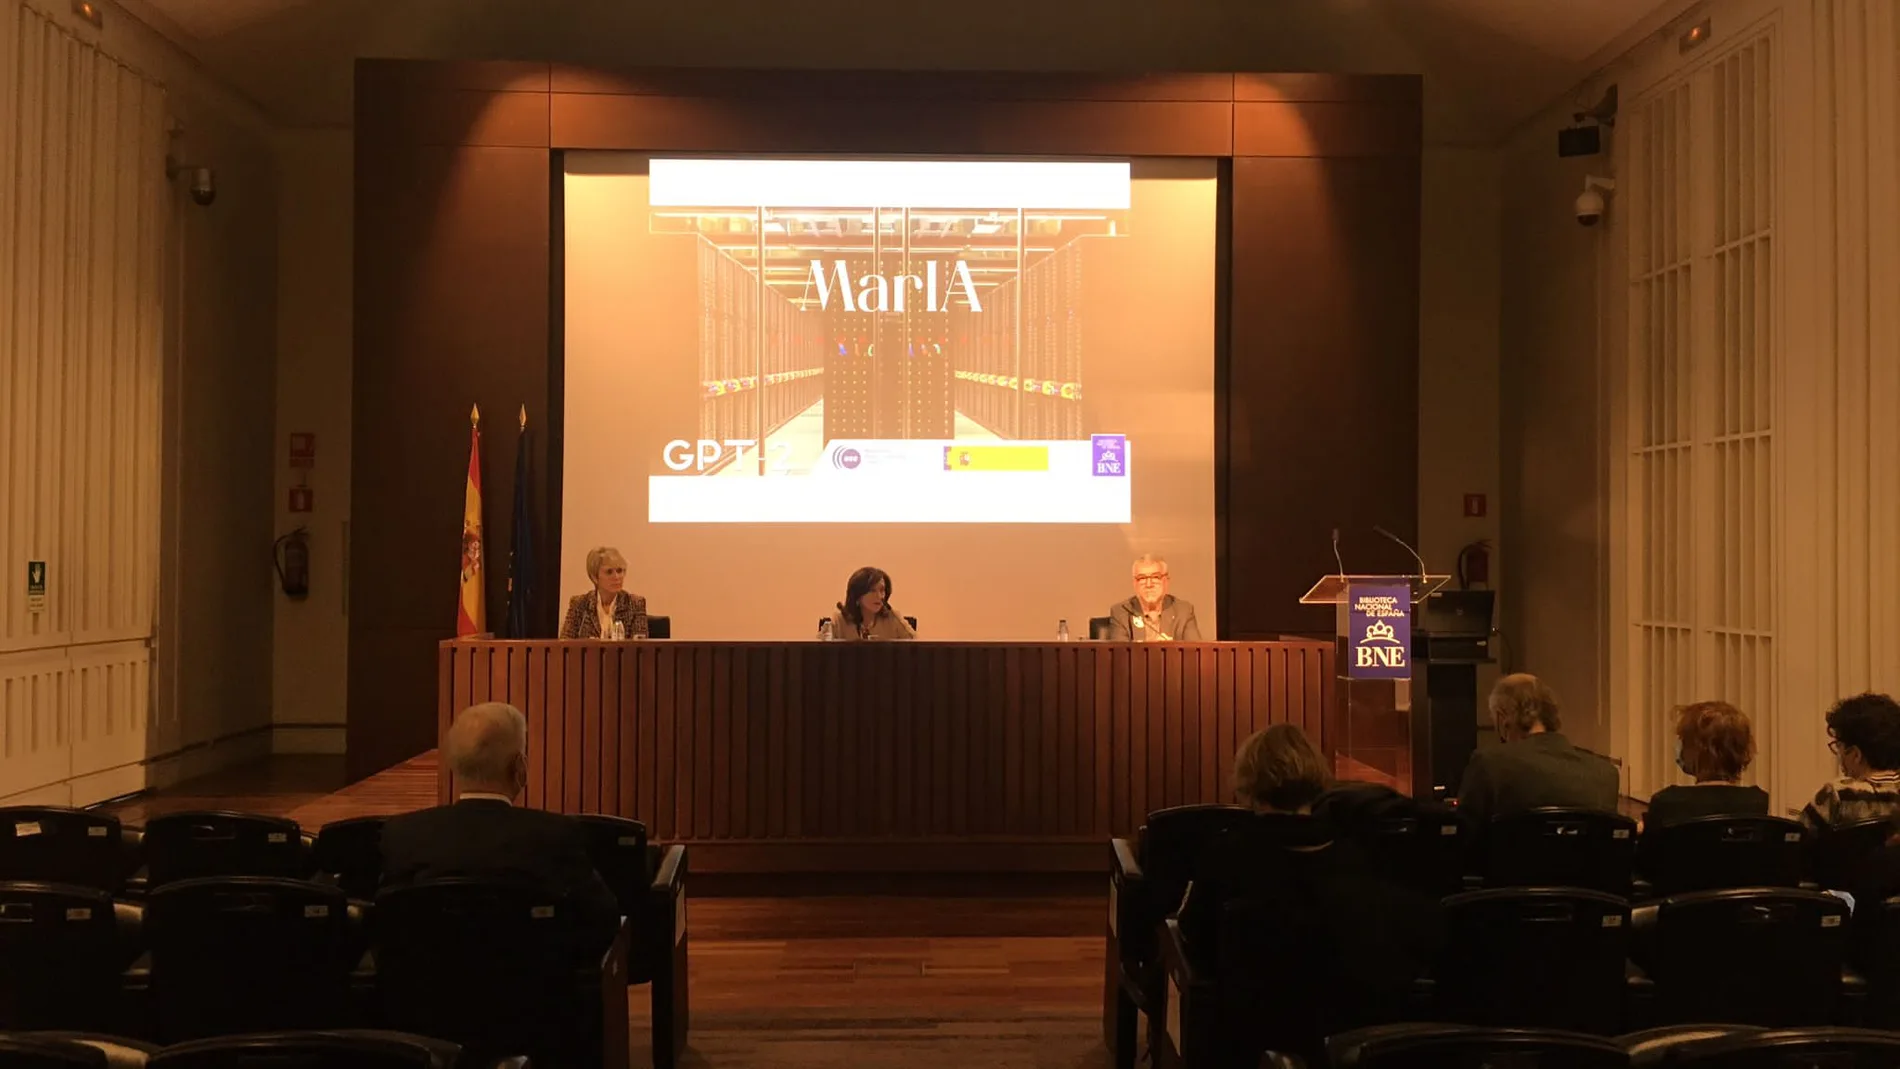 Presentación ante la Prensa de MarIA, con la presencia de Carme Arrigas (izda.), secretaria de Estado, Ana Santos, directora de la BNE, y Mateo Valero (dcha.), director del CNS